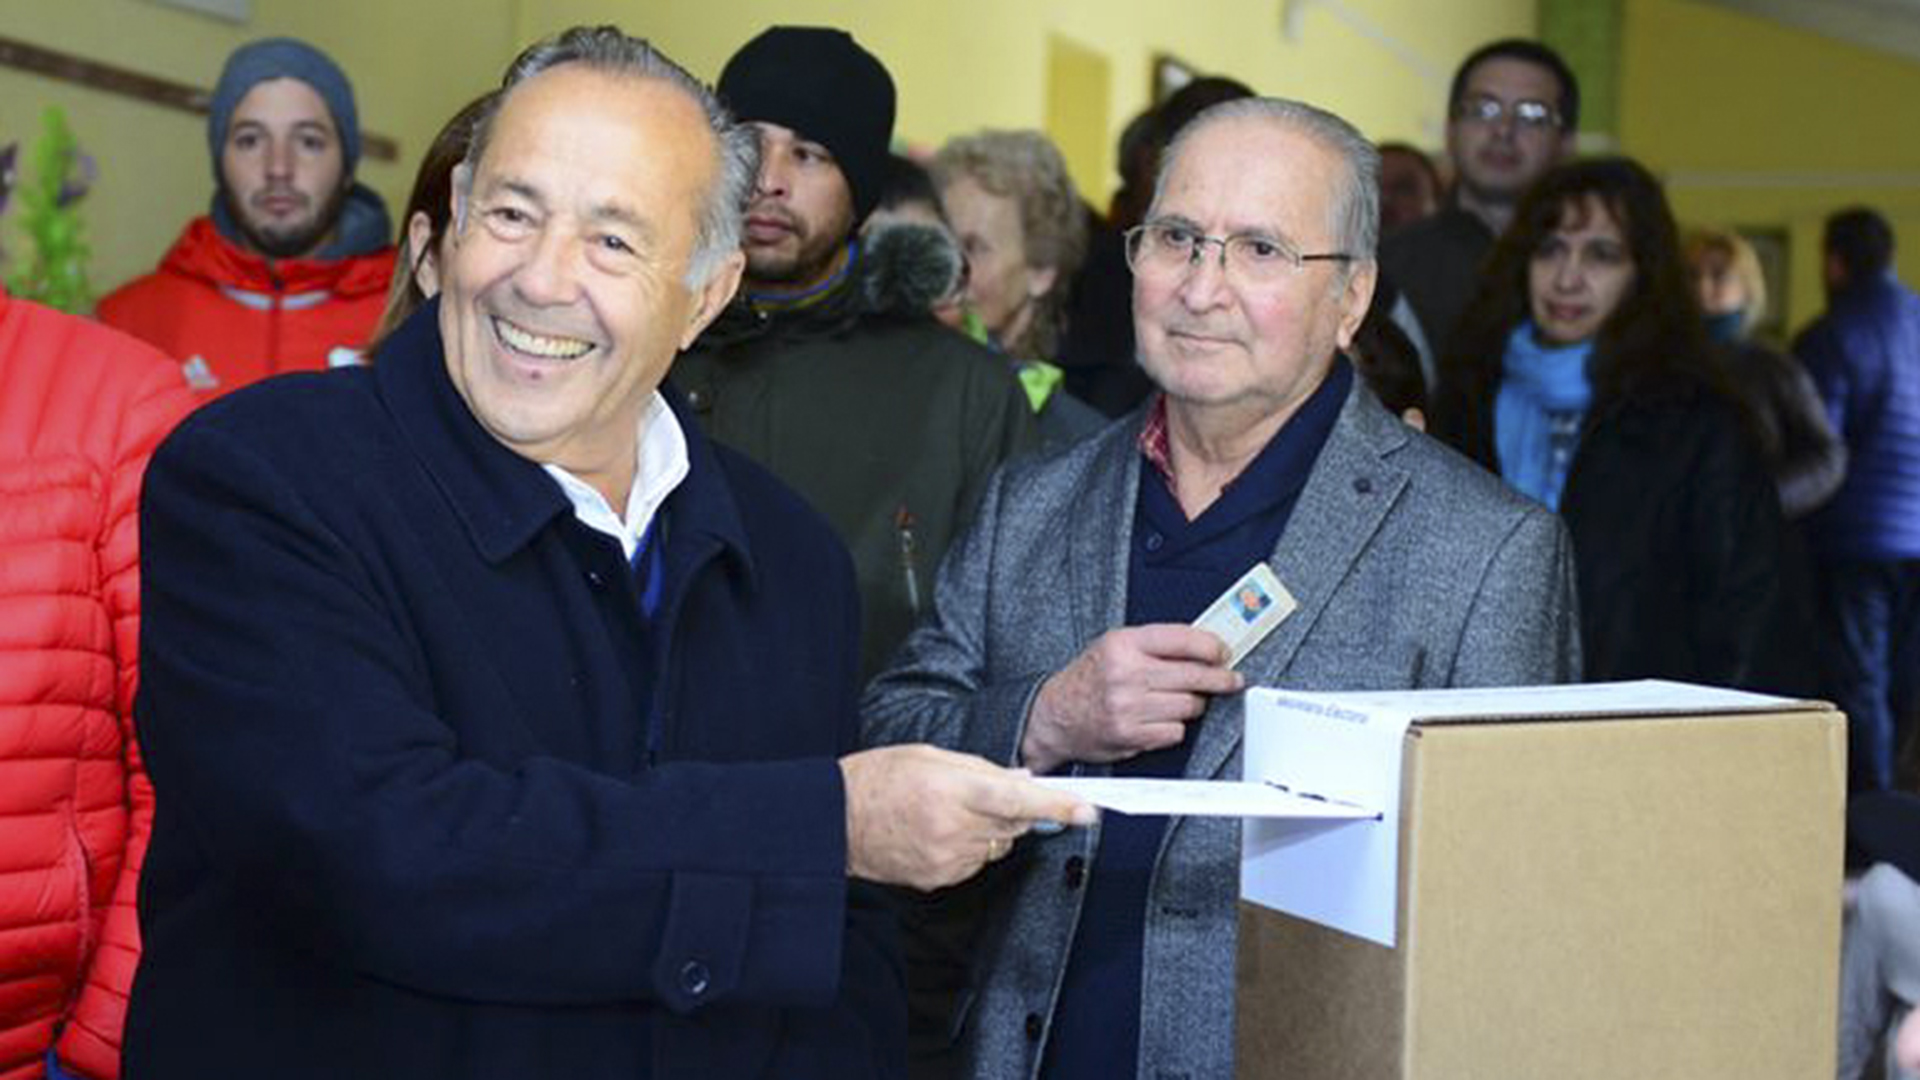 El senador Adolfo Rodríguez Saá votando en las elecciones de 2019 en San Luis, donde terminó en tercer lugar compitiendo para gobernador (NA)